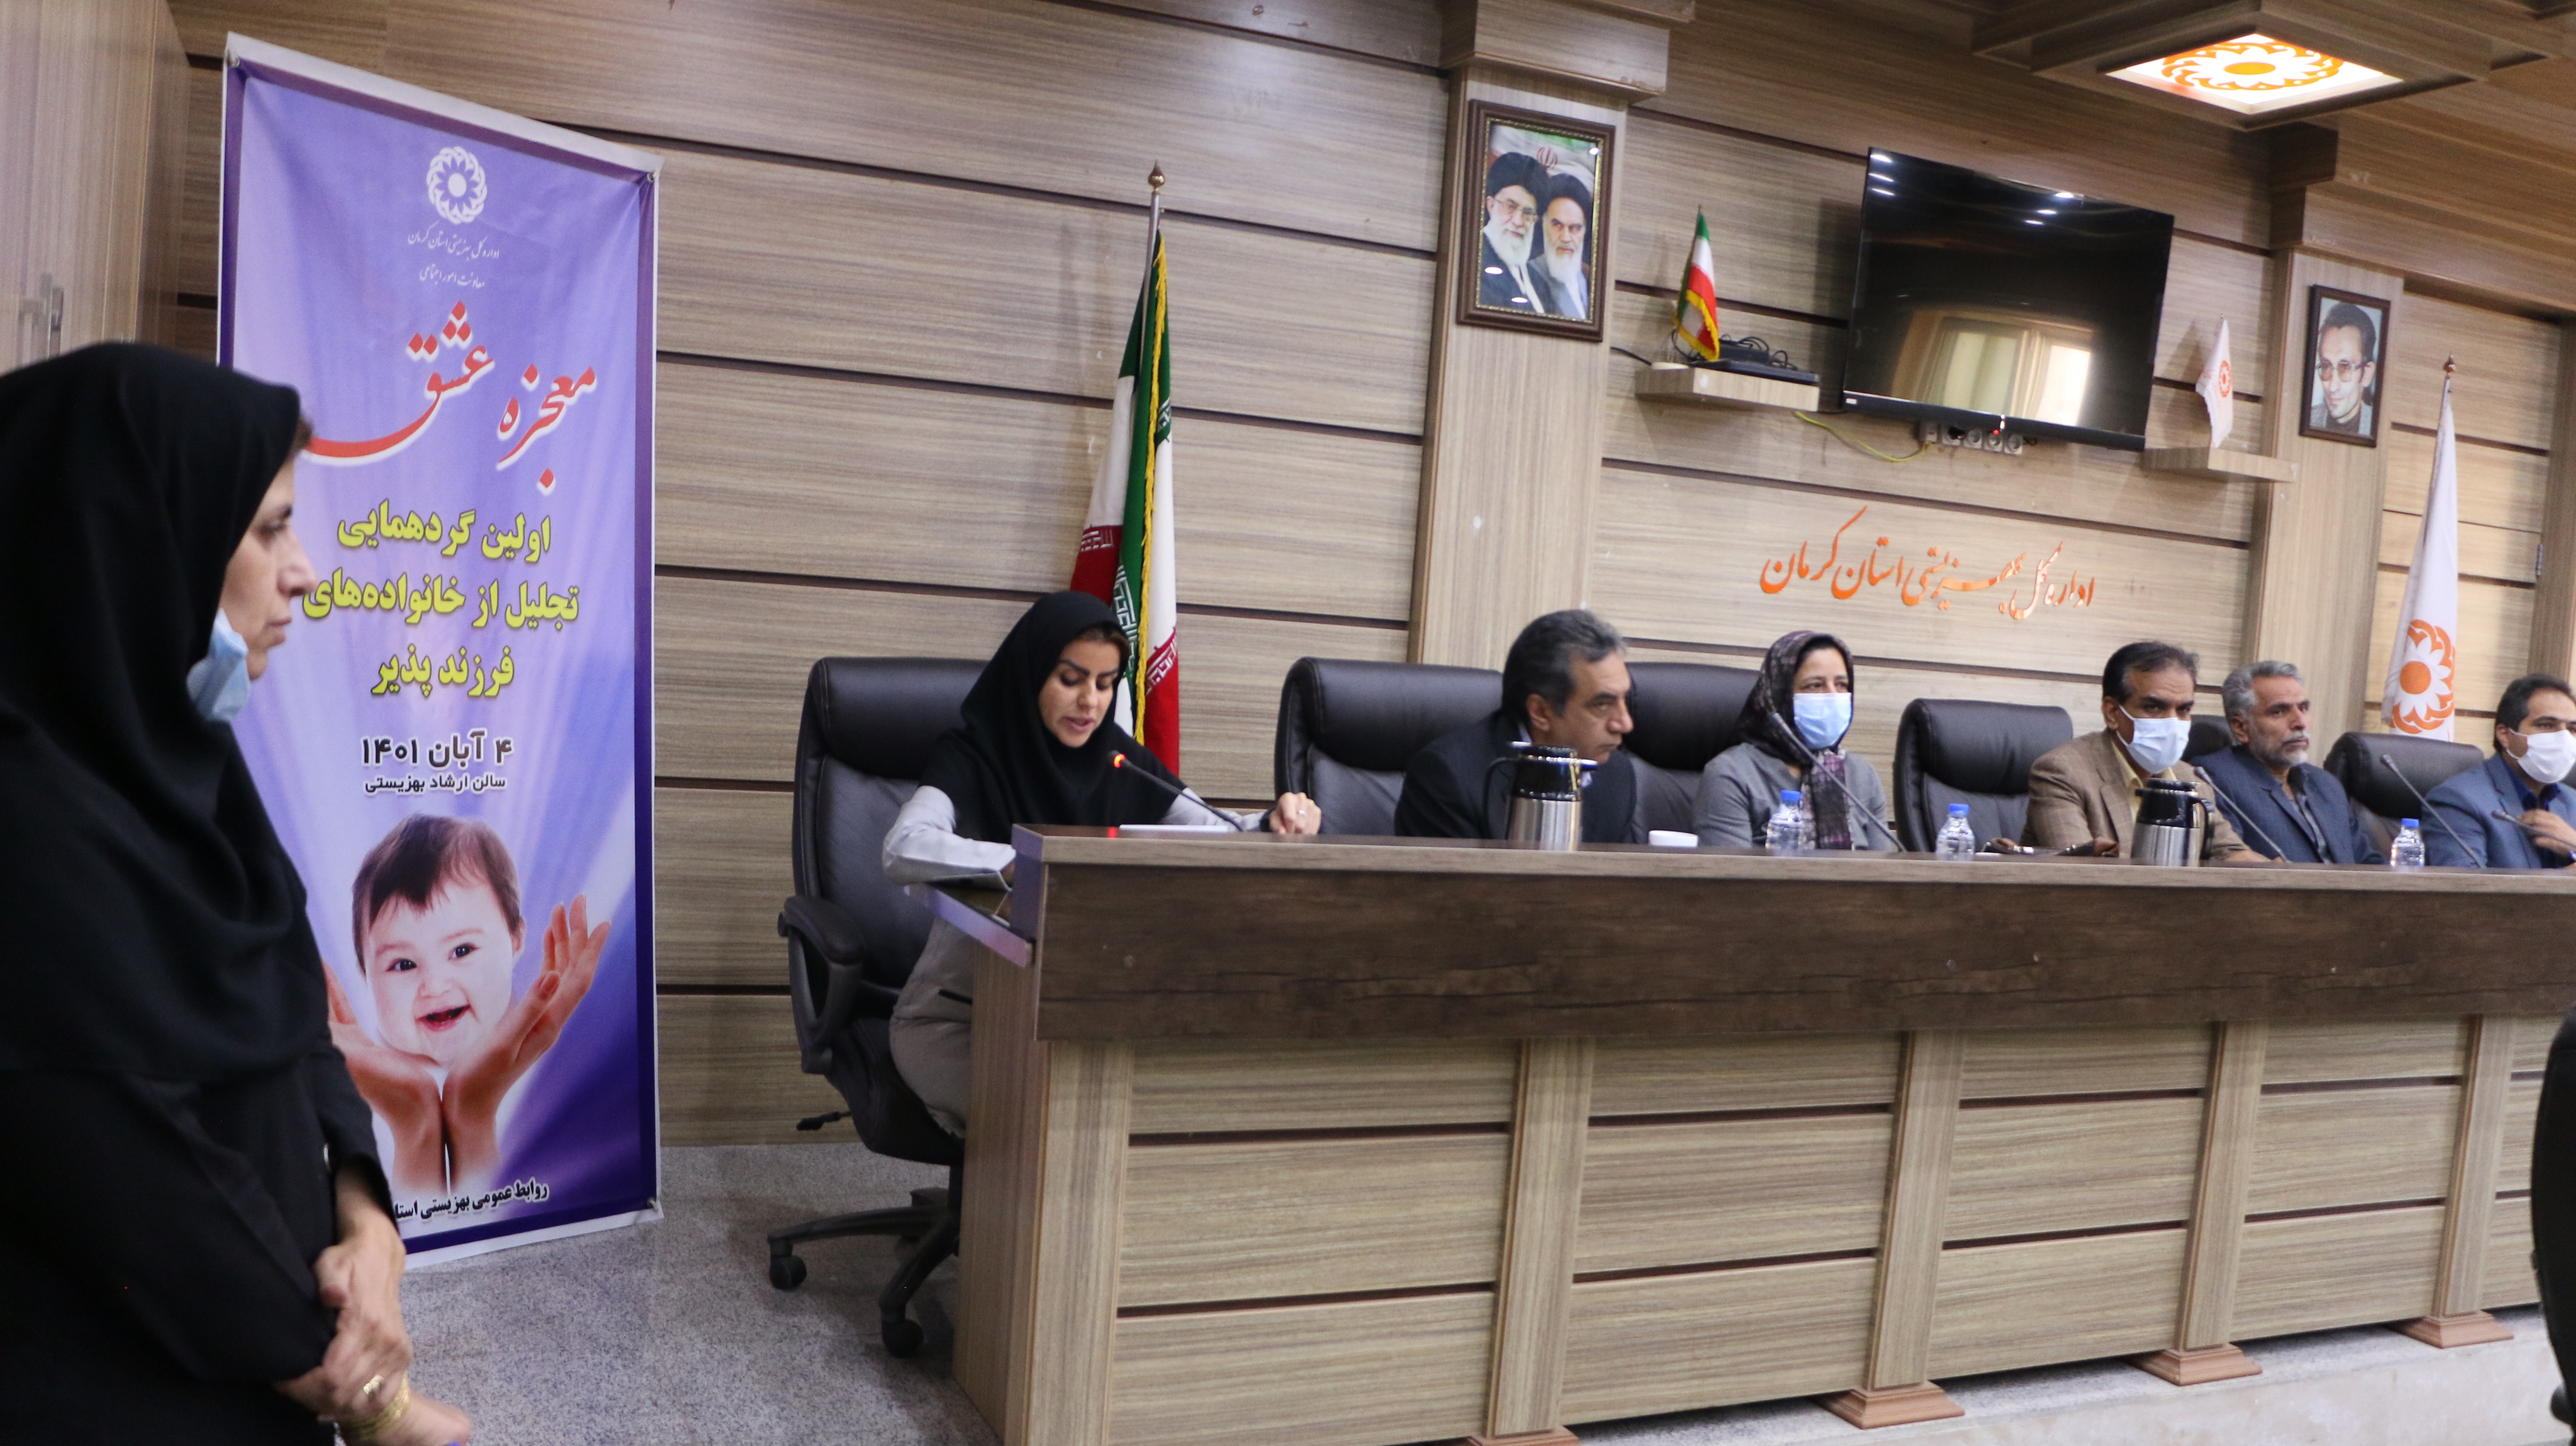 اولین گردهمایی خانواده های فرزندپذیر فرزندان با نیاز های ویژه  استان کرمان برگزار شد